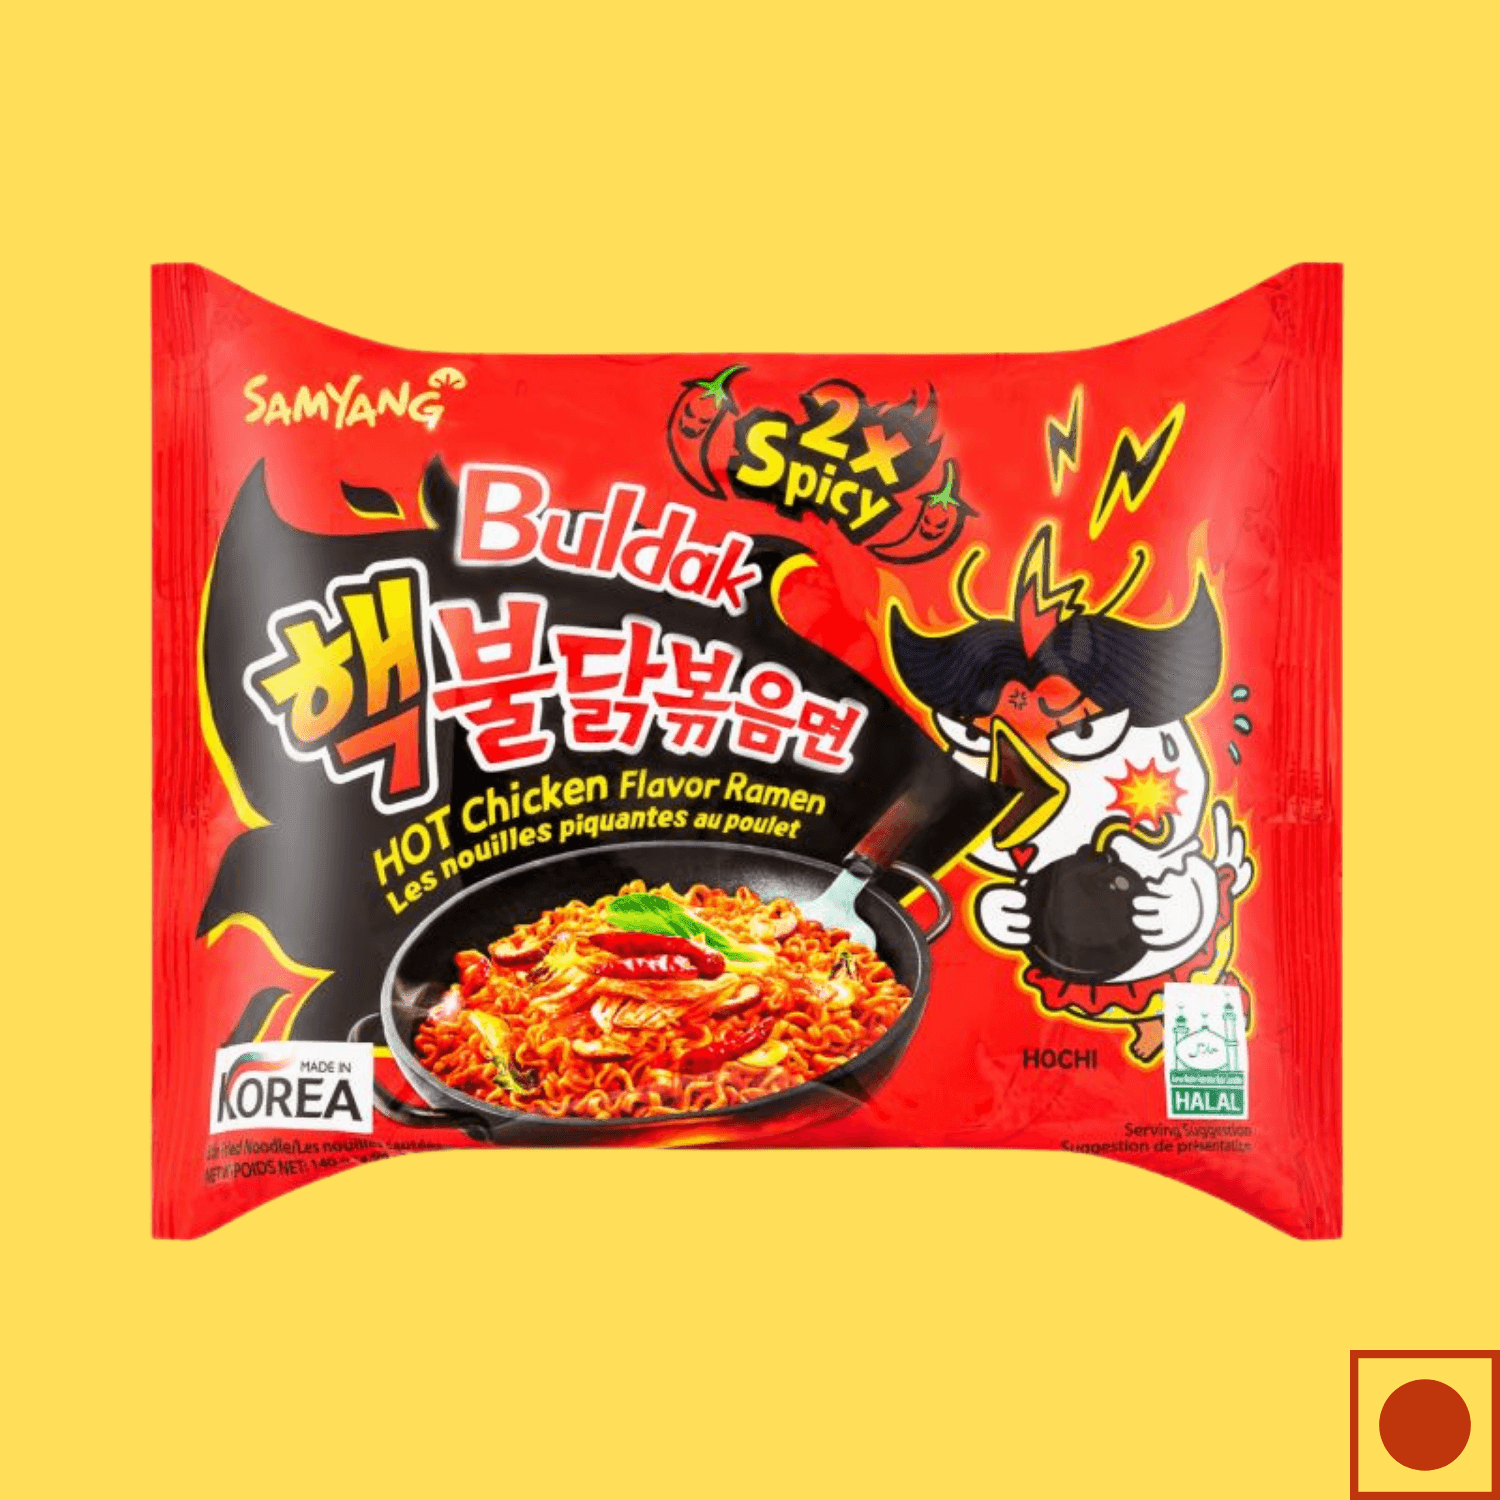 auditorium Beskrivende Valg Samyang Hot Chicken 2X Spicy Buldak Noodles, 140g (Imported) - Super 7 Mart